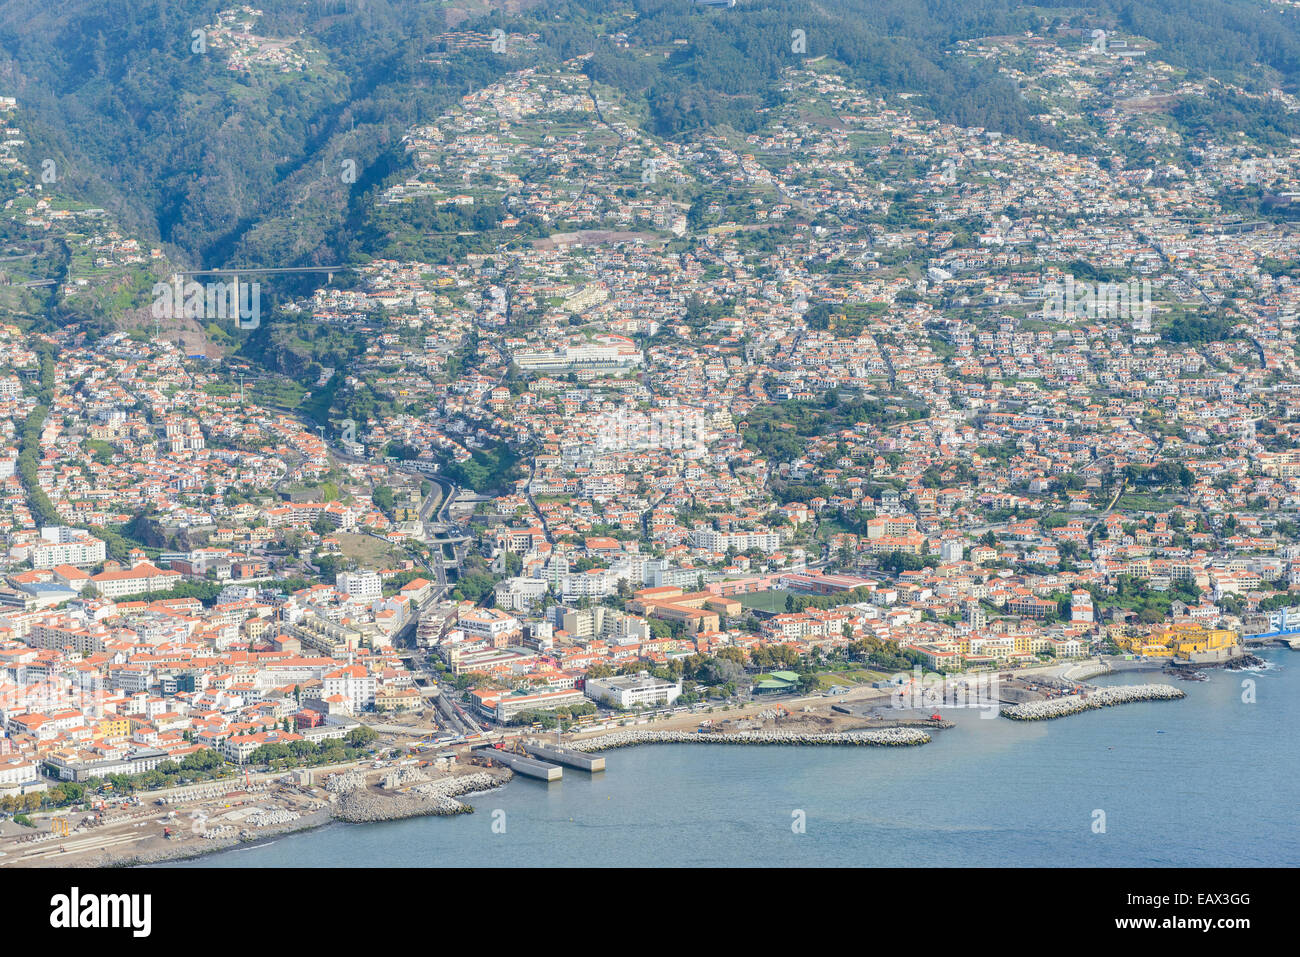 Extensa ciudad de montaña al borde del agua. Foto de stock